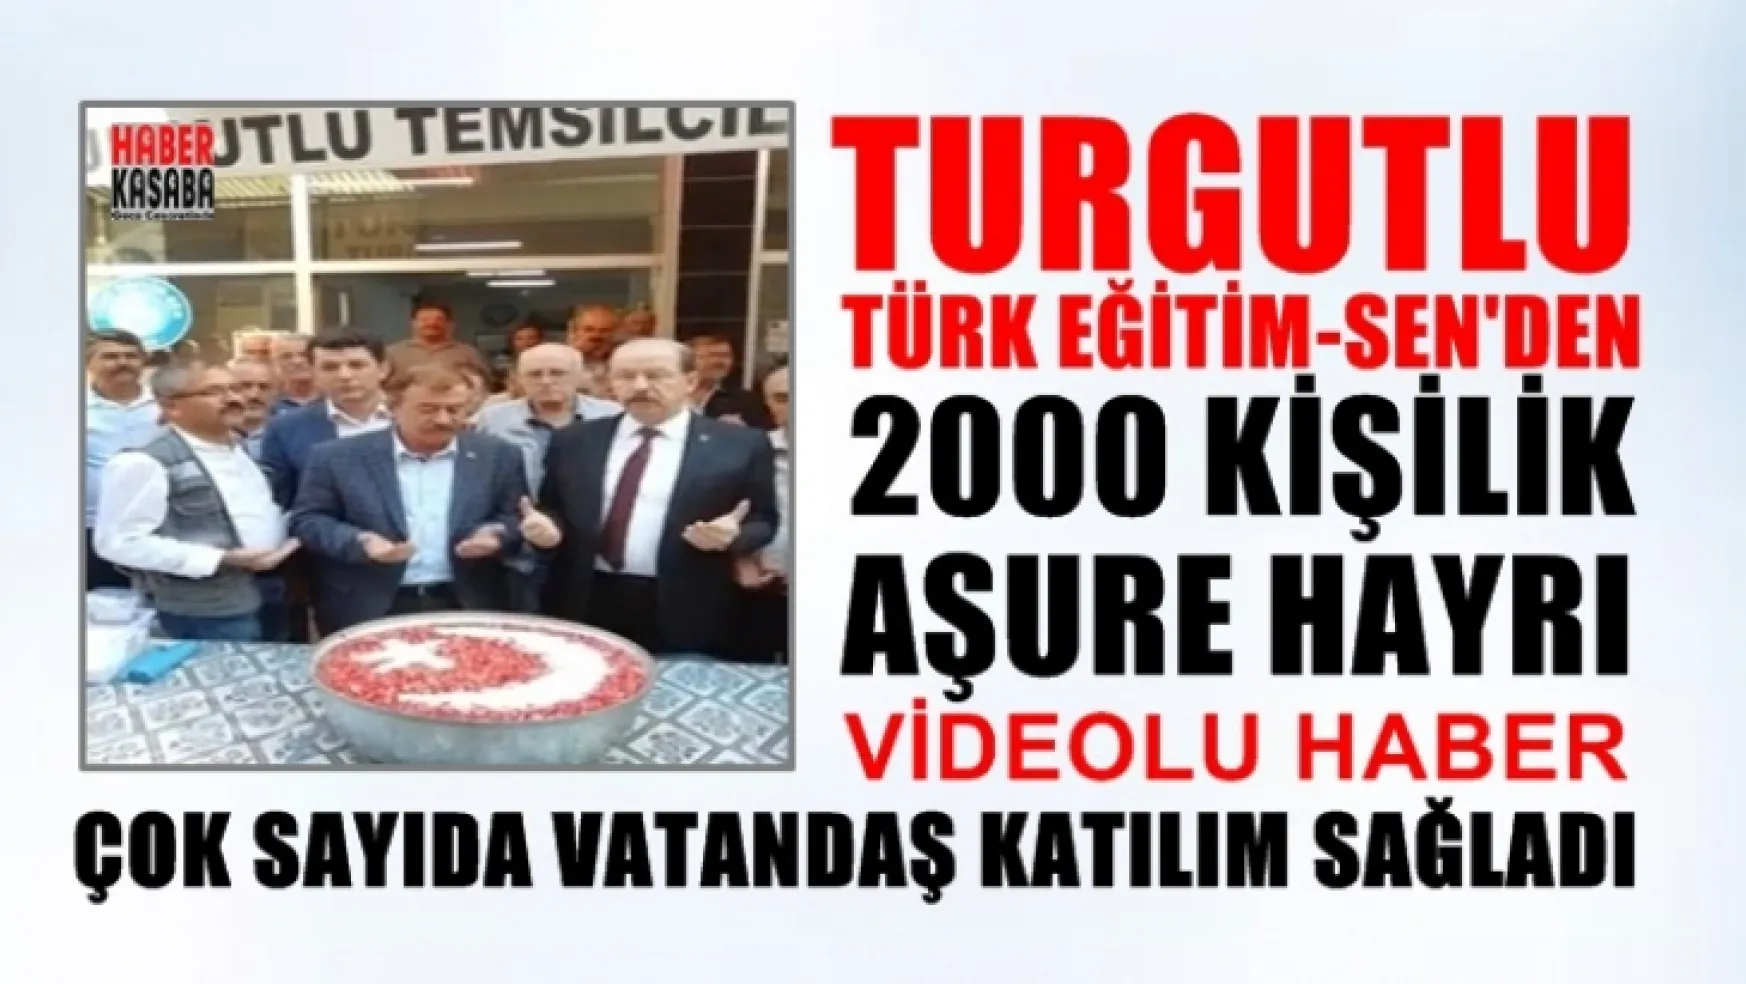 Türk Eğitim-Sen'in aşure hayrı'na çok sayıda Vatandaş katıldı